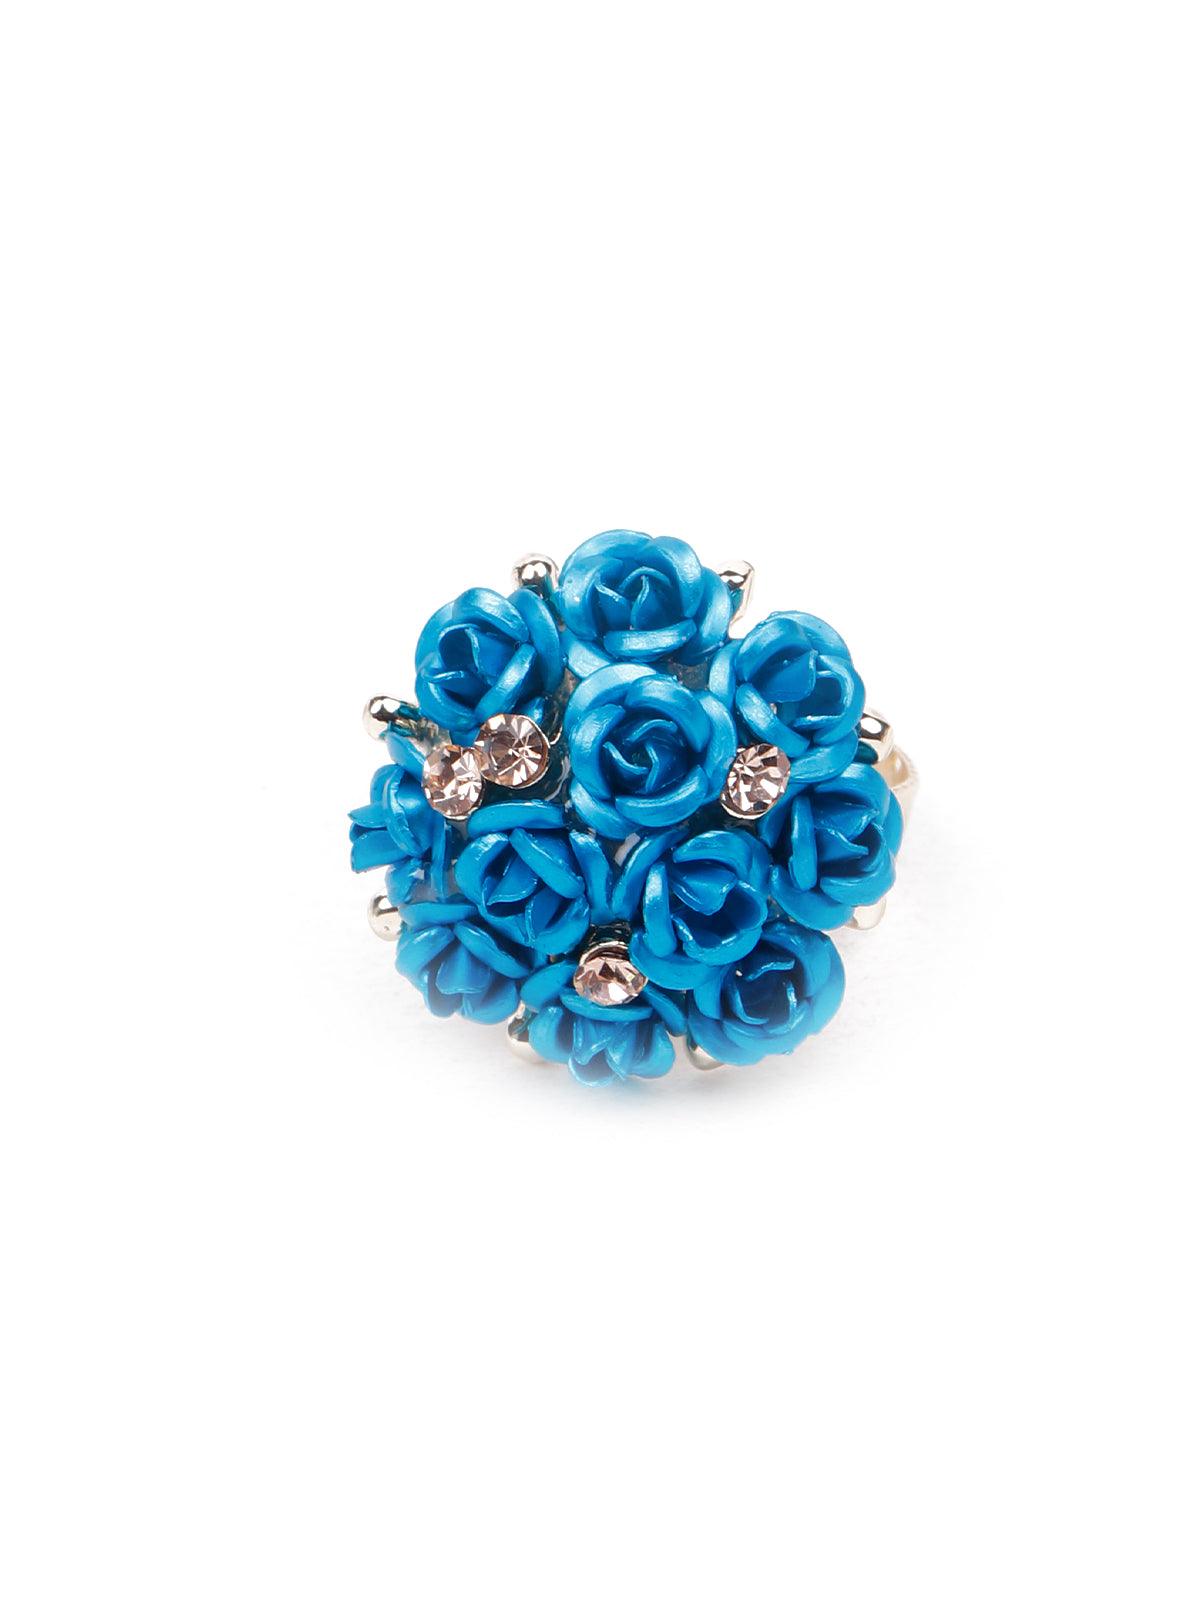 Women's Blue Floral Pendant Necklace Set - Odette